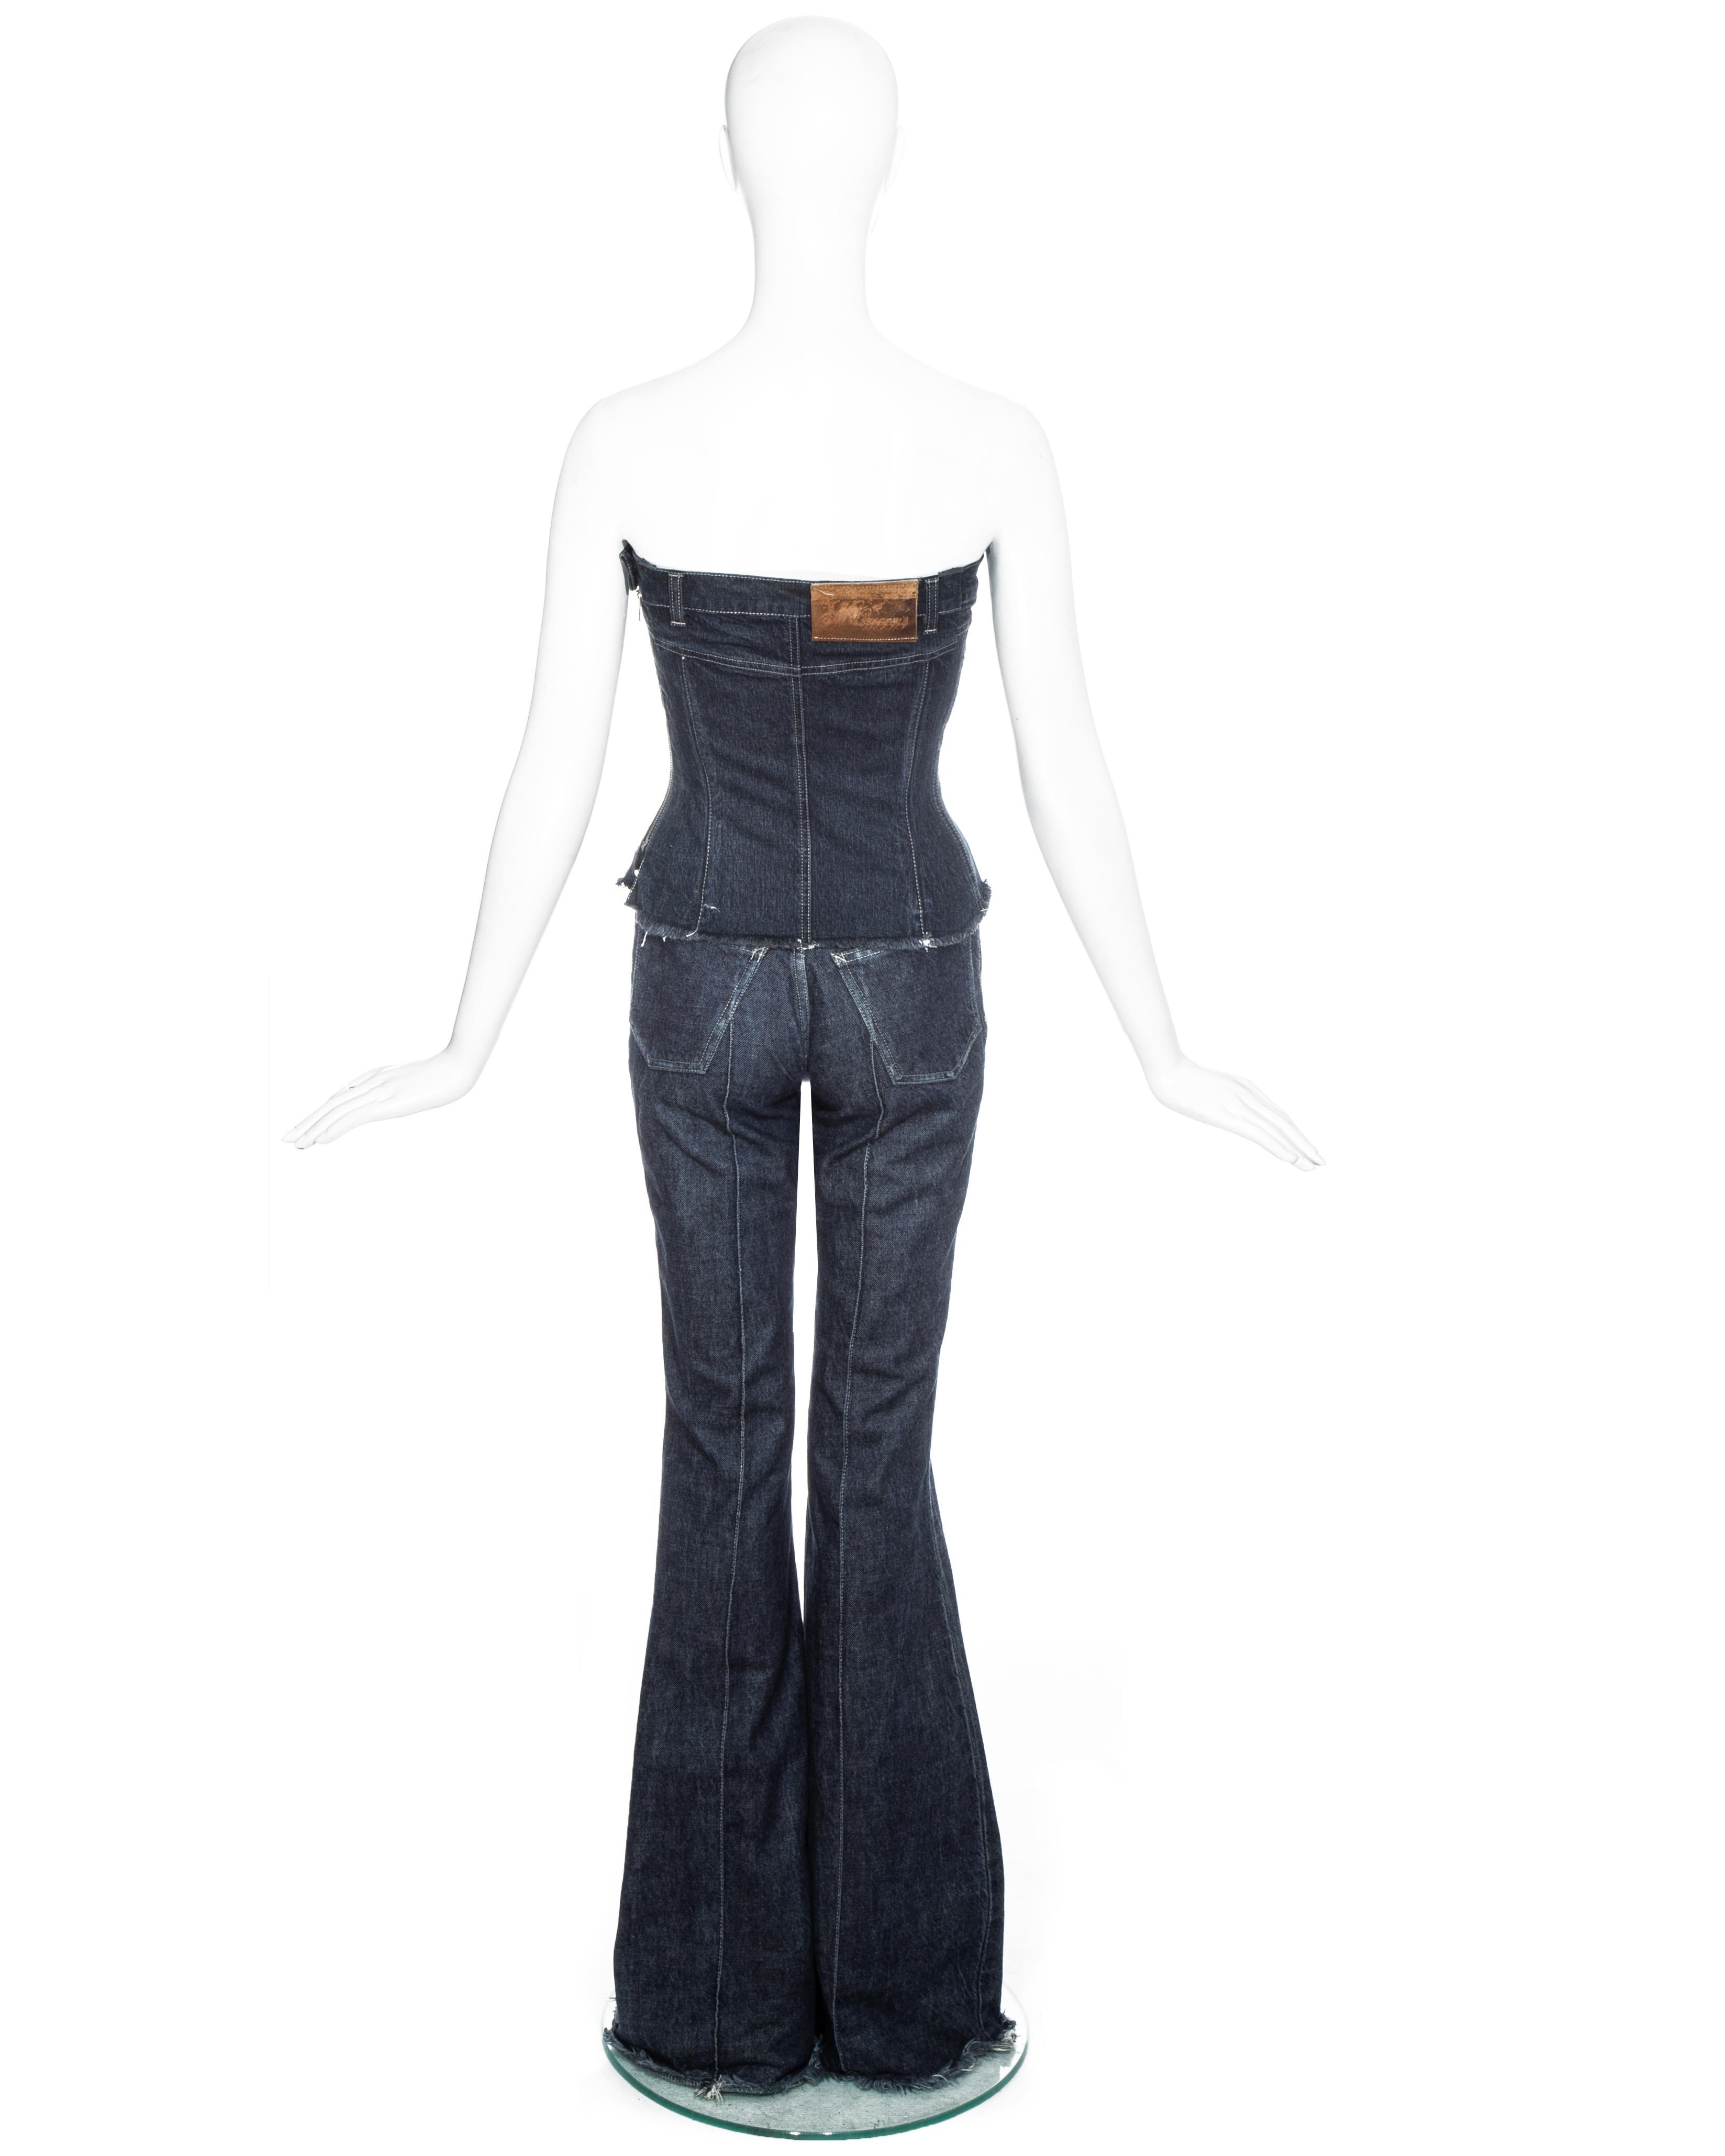 Women's Alexander McQueen indigo denim corset and pants set, fw 1996